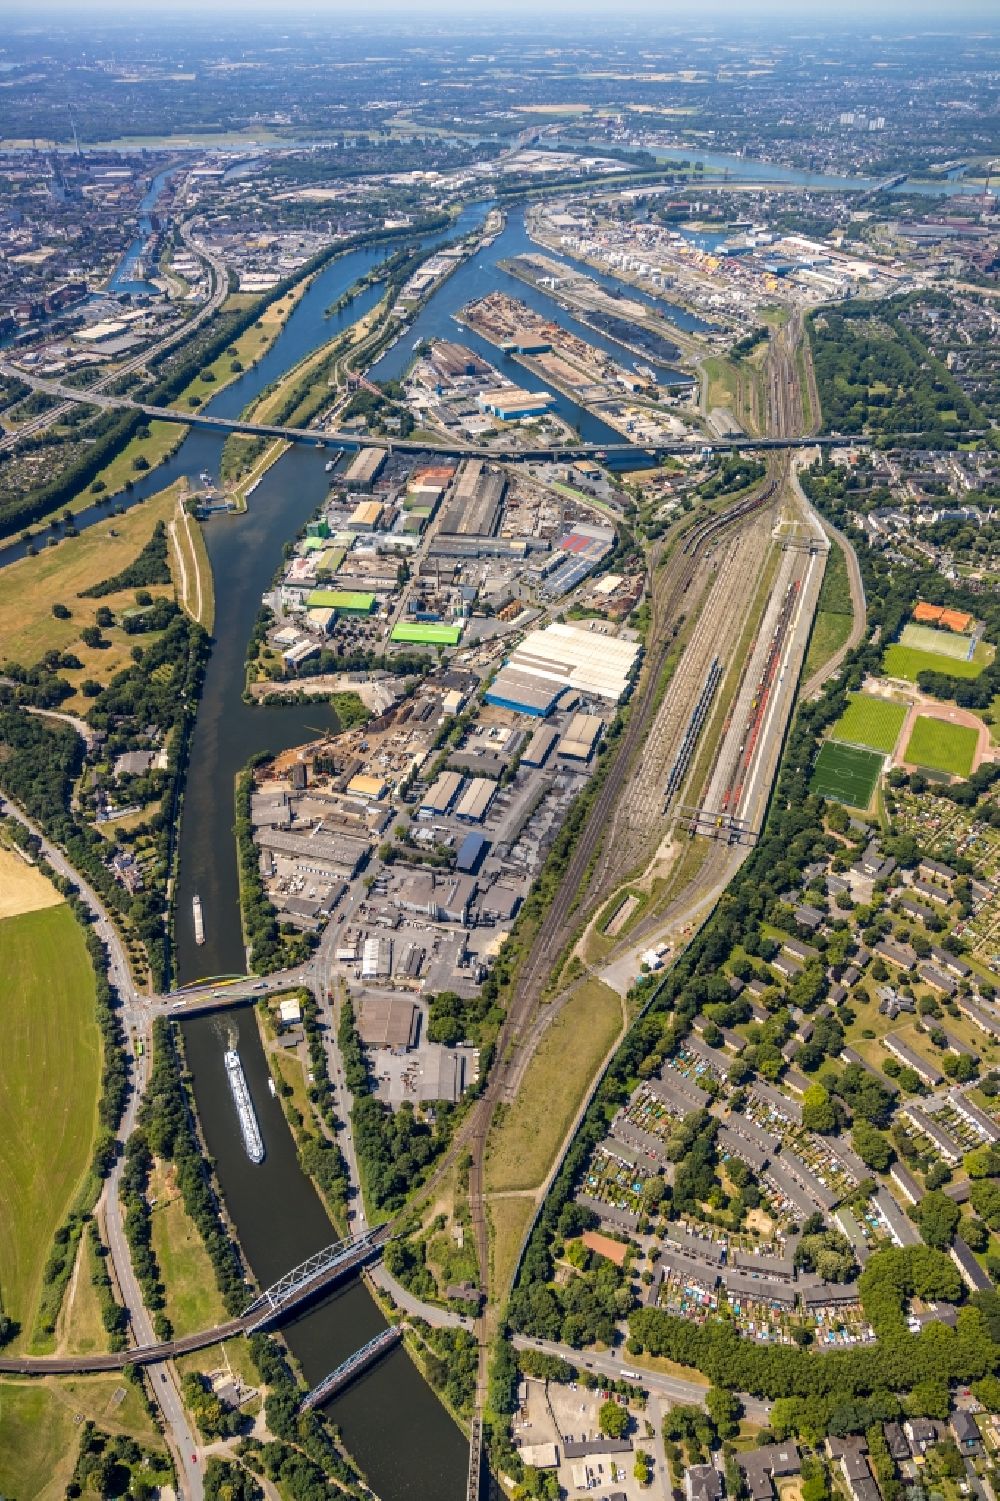 Luftbild Duisburg - Stadtansicht am Ufer des Flußverlaufes an der Ruhr in Duisburg im Bundesland Nordrhein-Westfalen, Deutschland